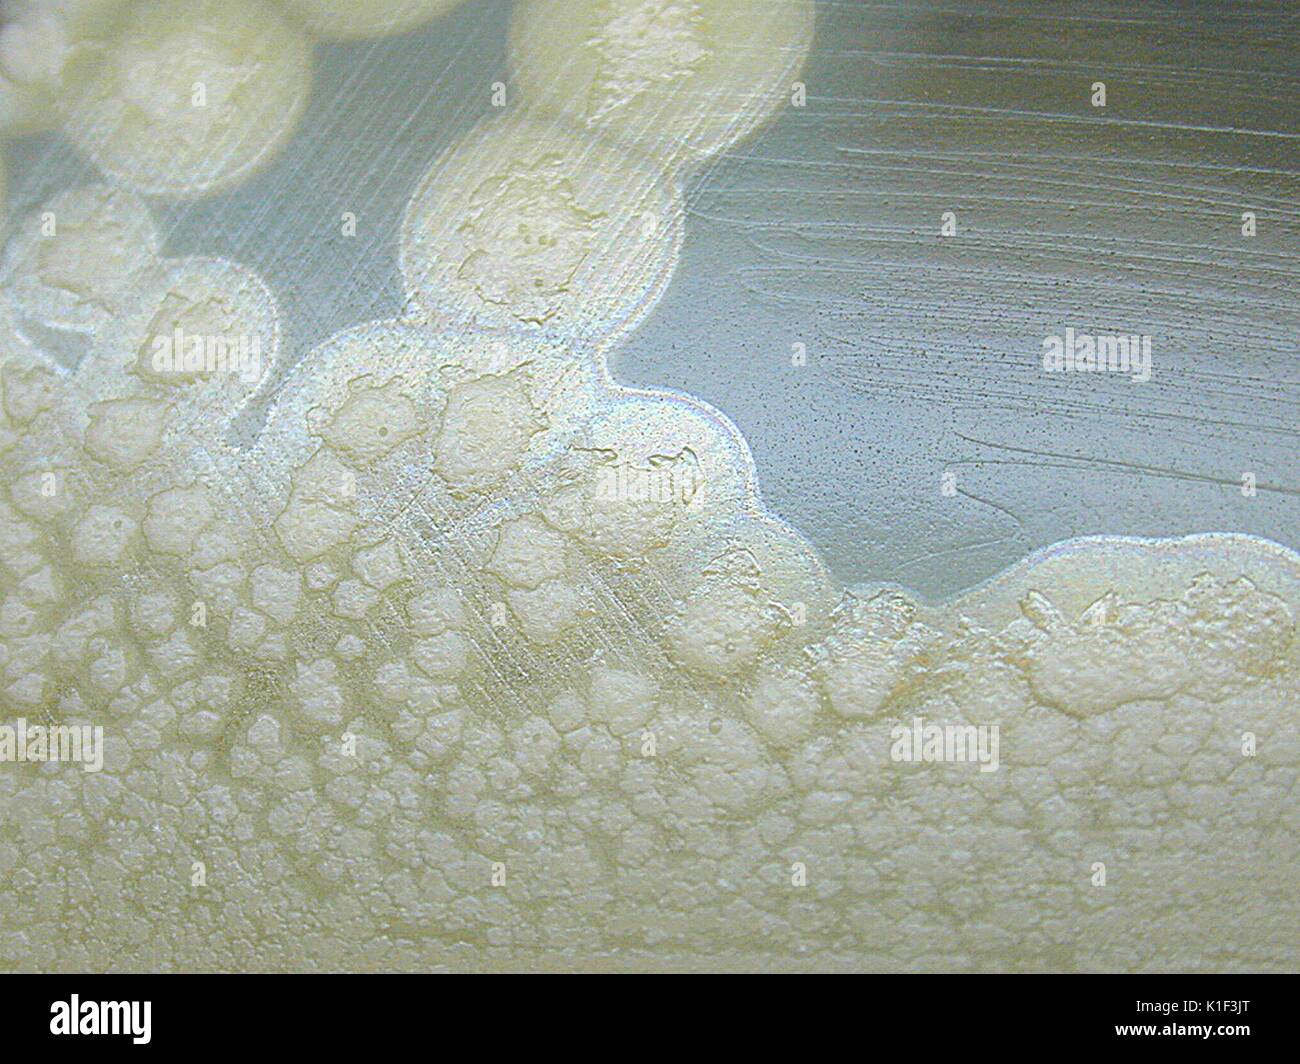 Clostridium botulinum crescente sul tuorlo d'uovo agar che mostra la lipasi reazione dopo 72 ore di incubazione. C. botulinum è rigorosamente un batterio anaerobico che quando viene cresciuto sul tuorlo d'uovo agar, sue colonie presenteranno una reazione di lipasi, descritto come l'area lucida intorno a ogni colonia. Immagine cortesia CDC/cortesia di Larry Stauffer, Oregon State Public Health Laboratory, 2002. Foto Stock